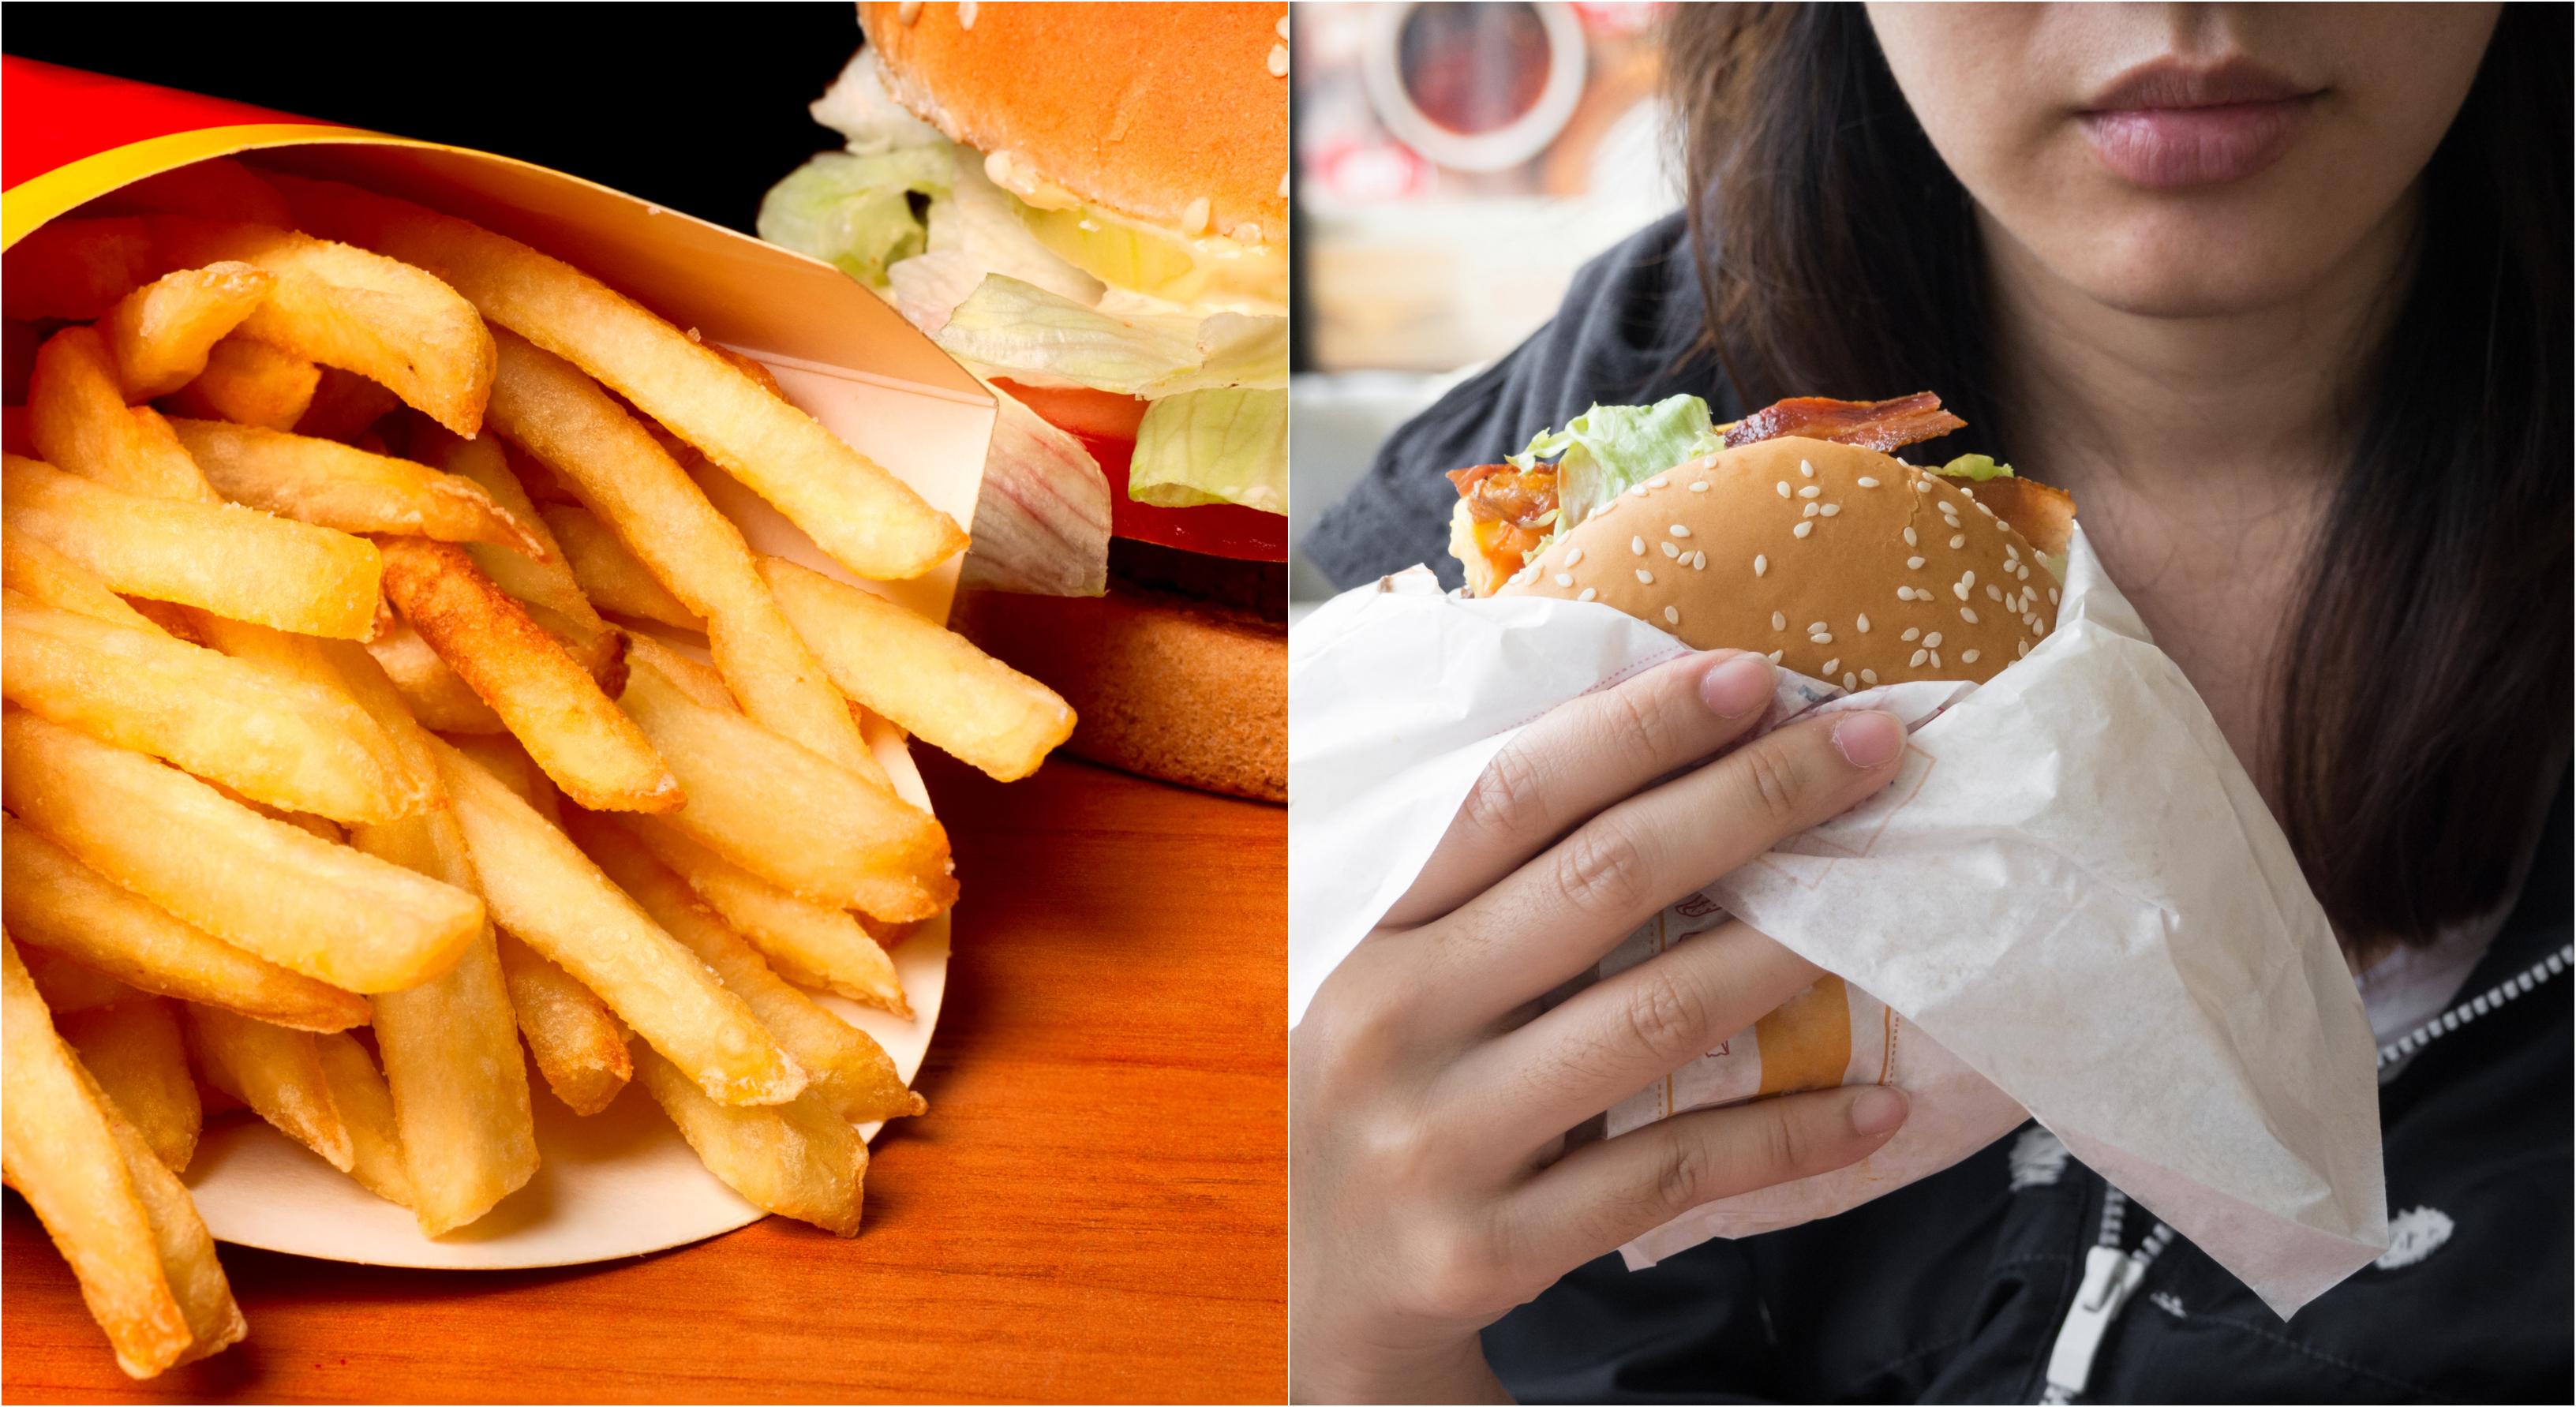 colaj de fotografii cu cartofi prajiti fast-food si perosna care testeaza produsele mancarea fast-food